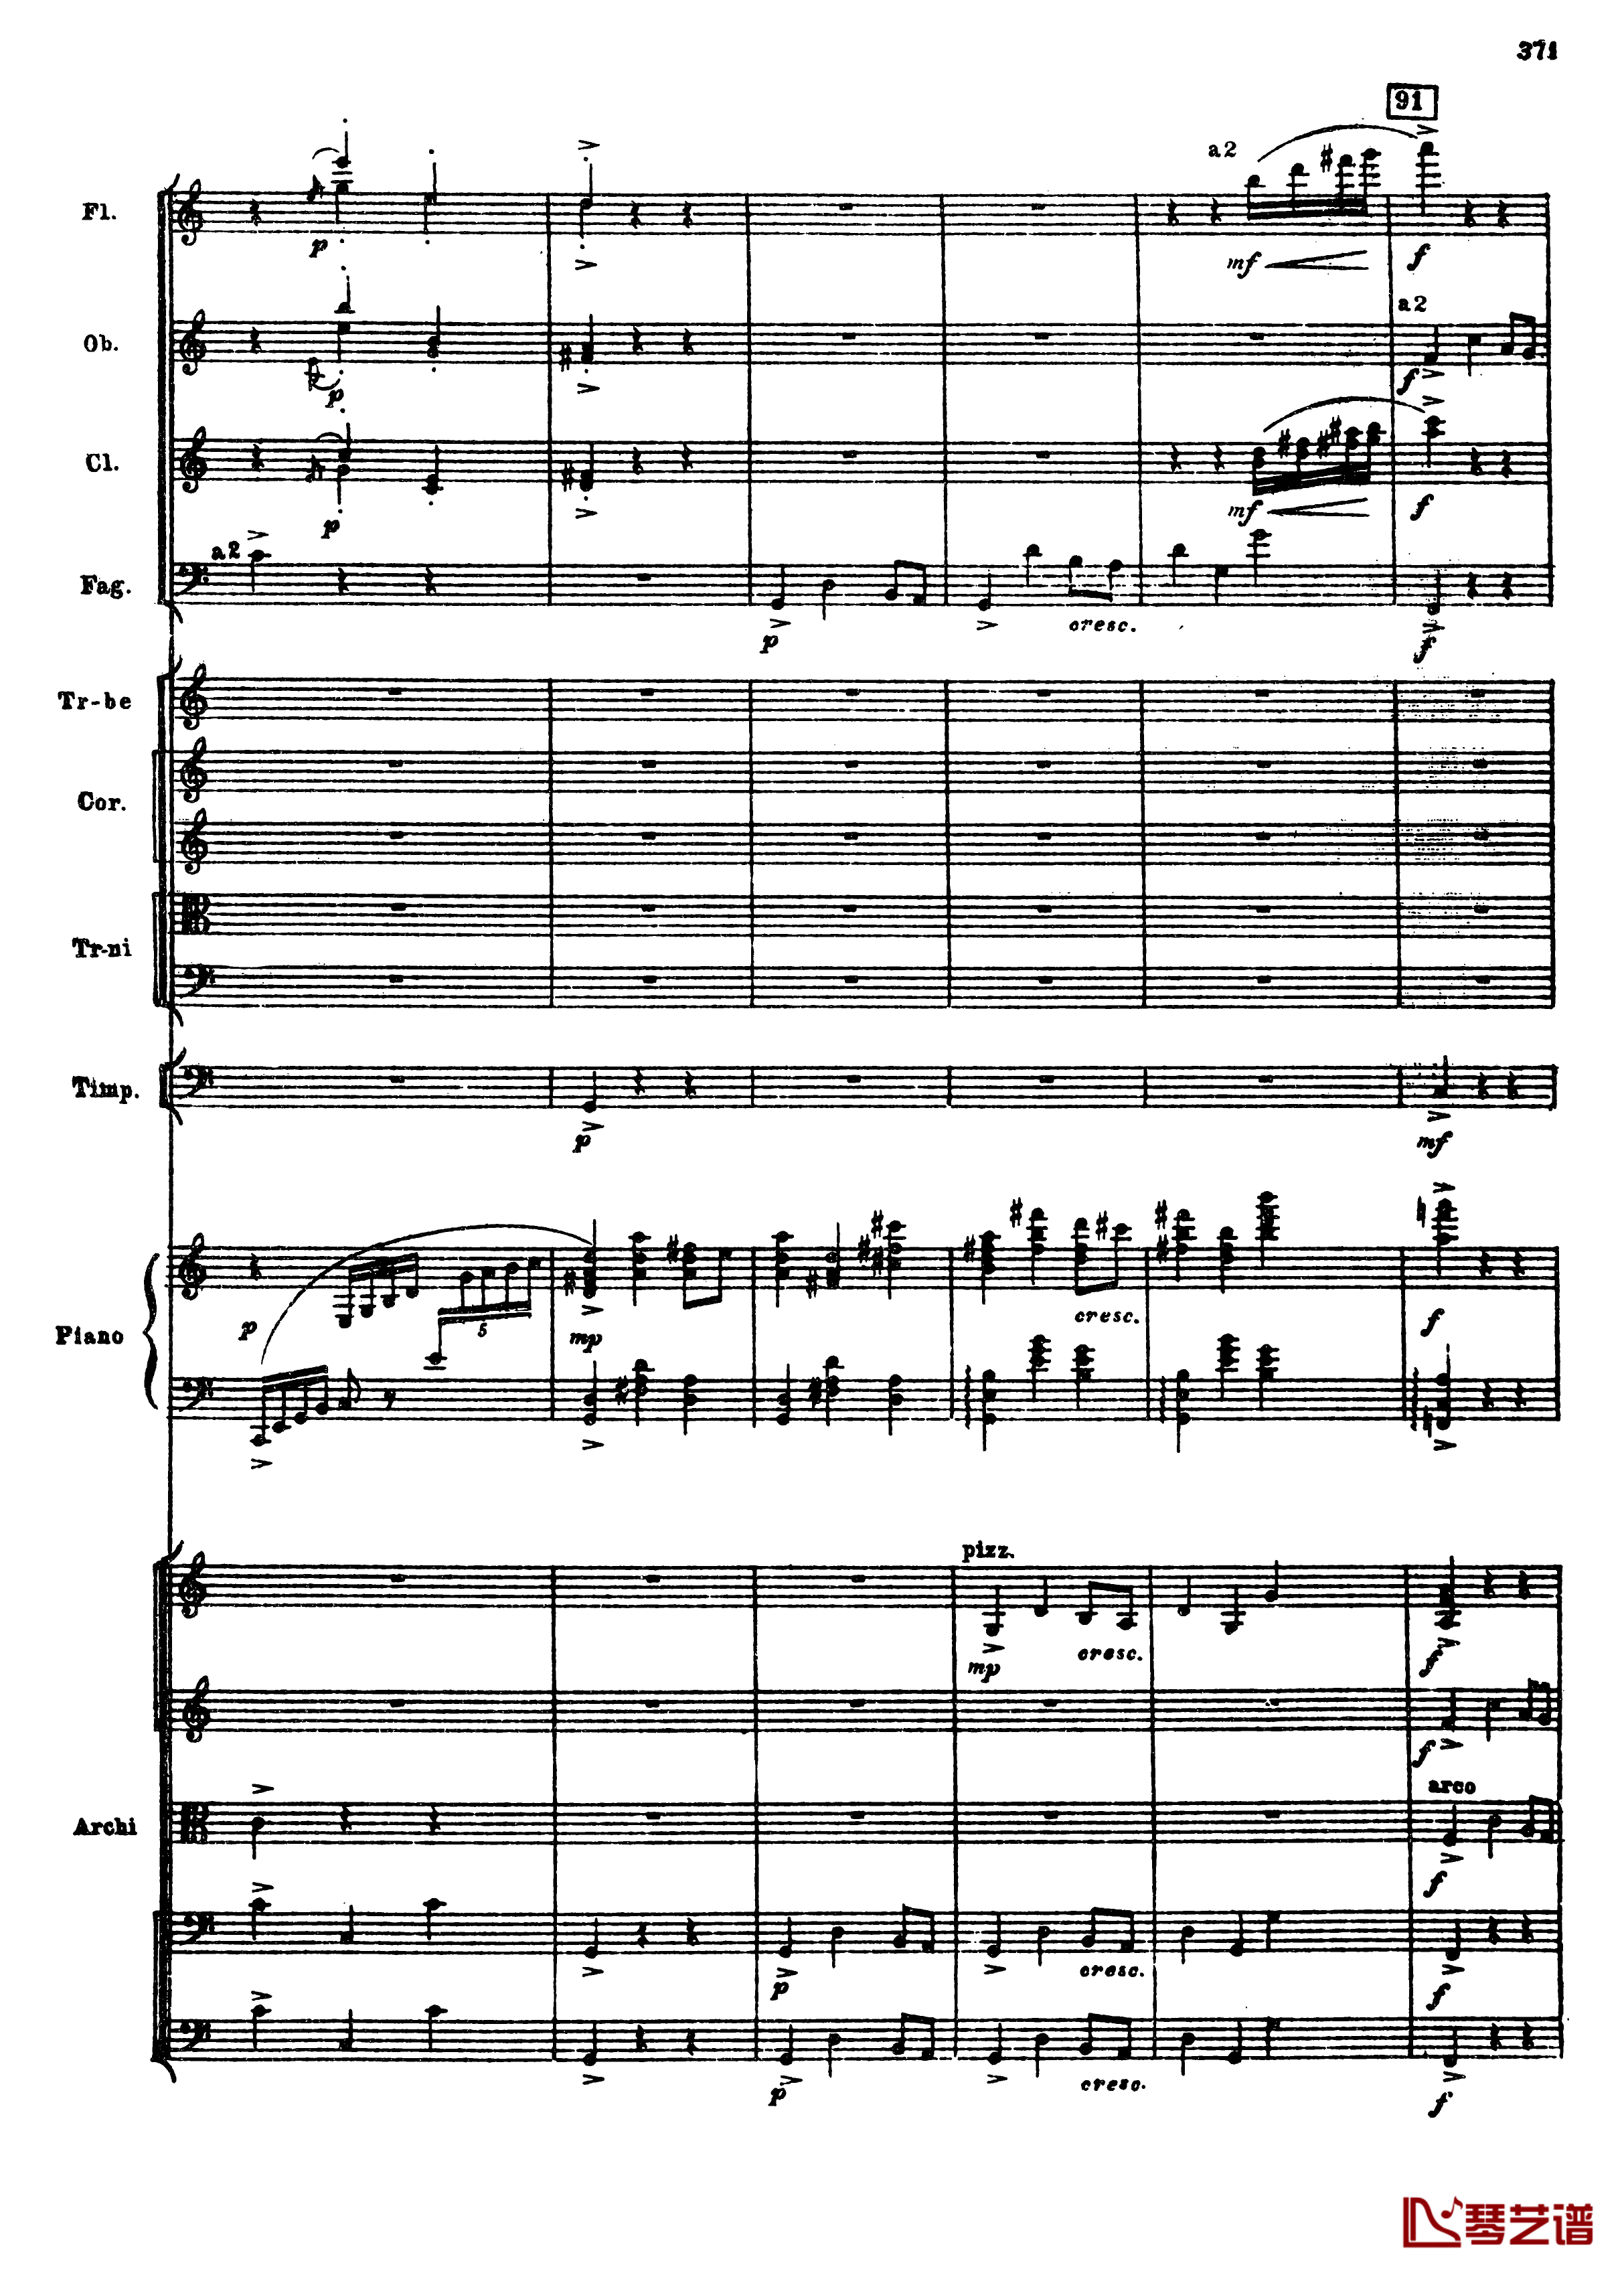 普罗科菲耶夫第三钢琴协奏曲钢琴谱-总谱-普罗科非耶夫103